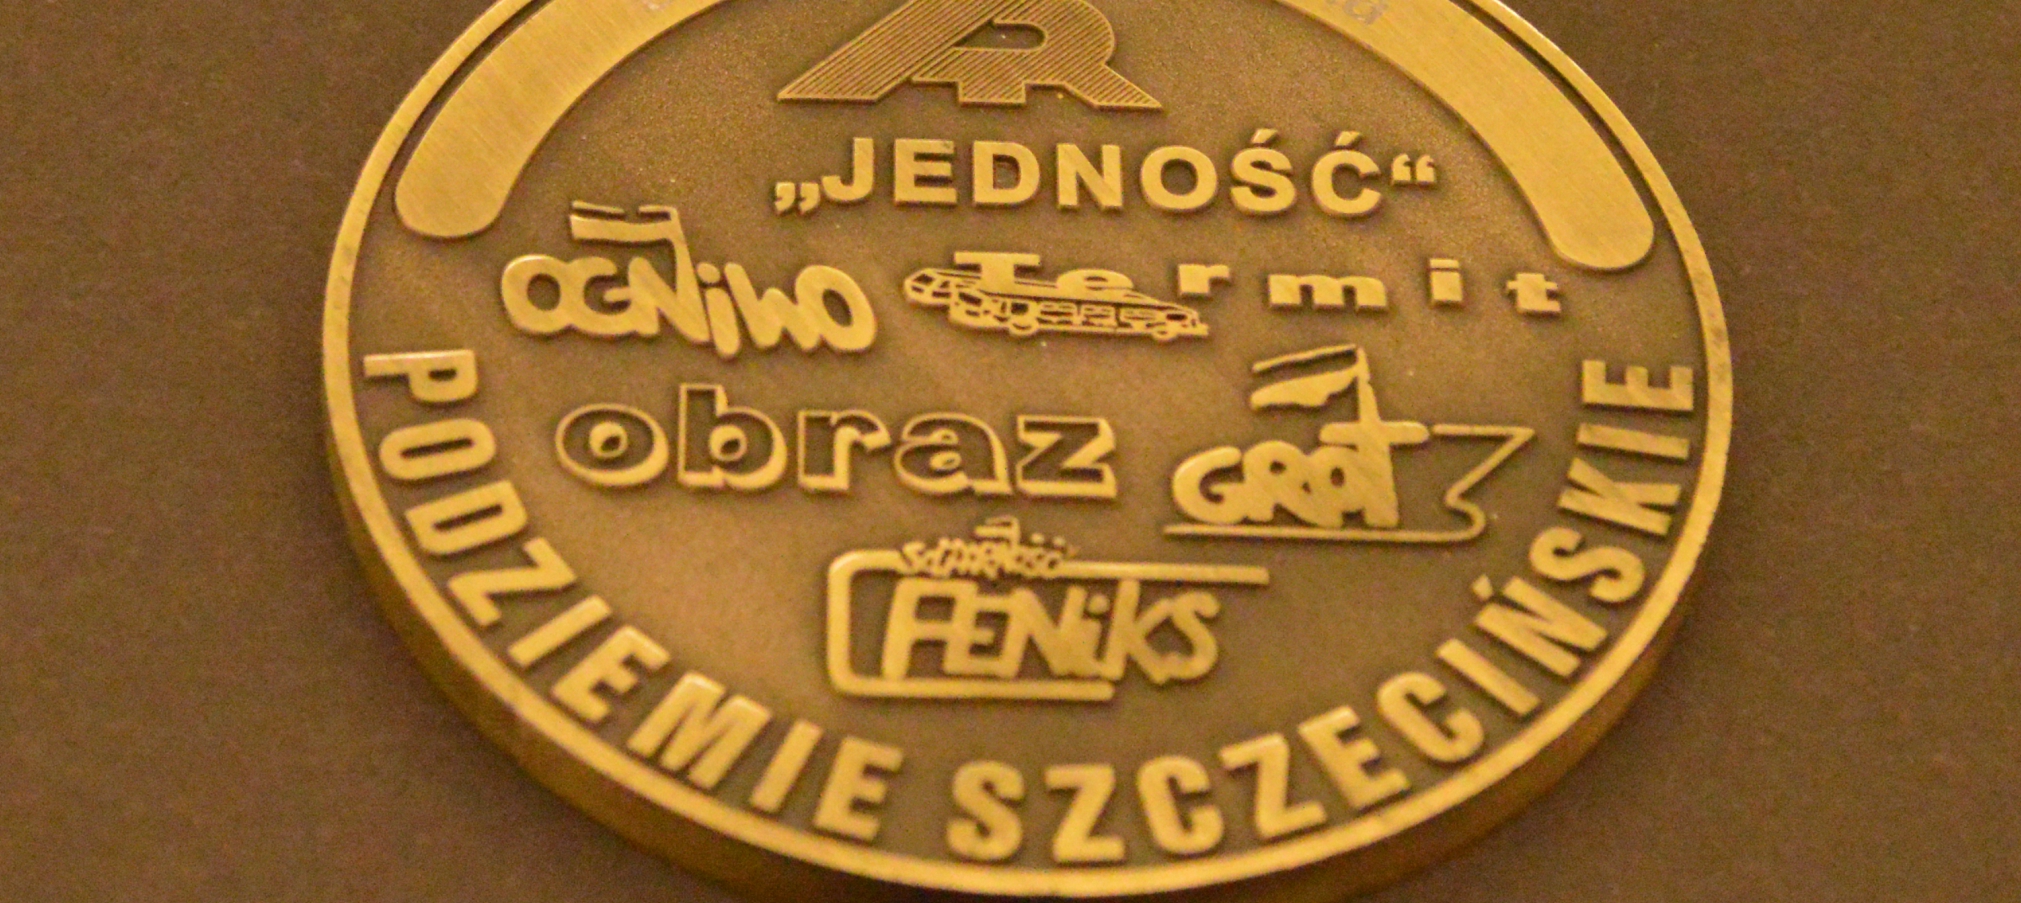 Medale dla szczecińskiej opozycji